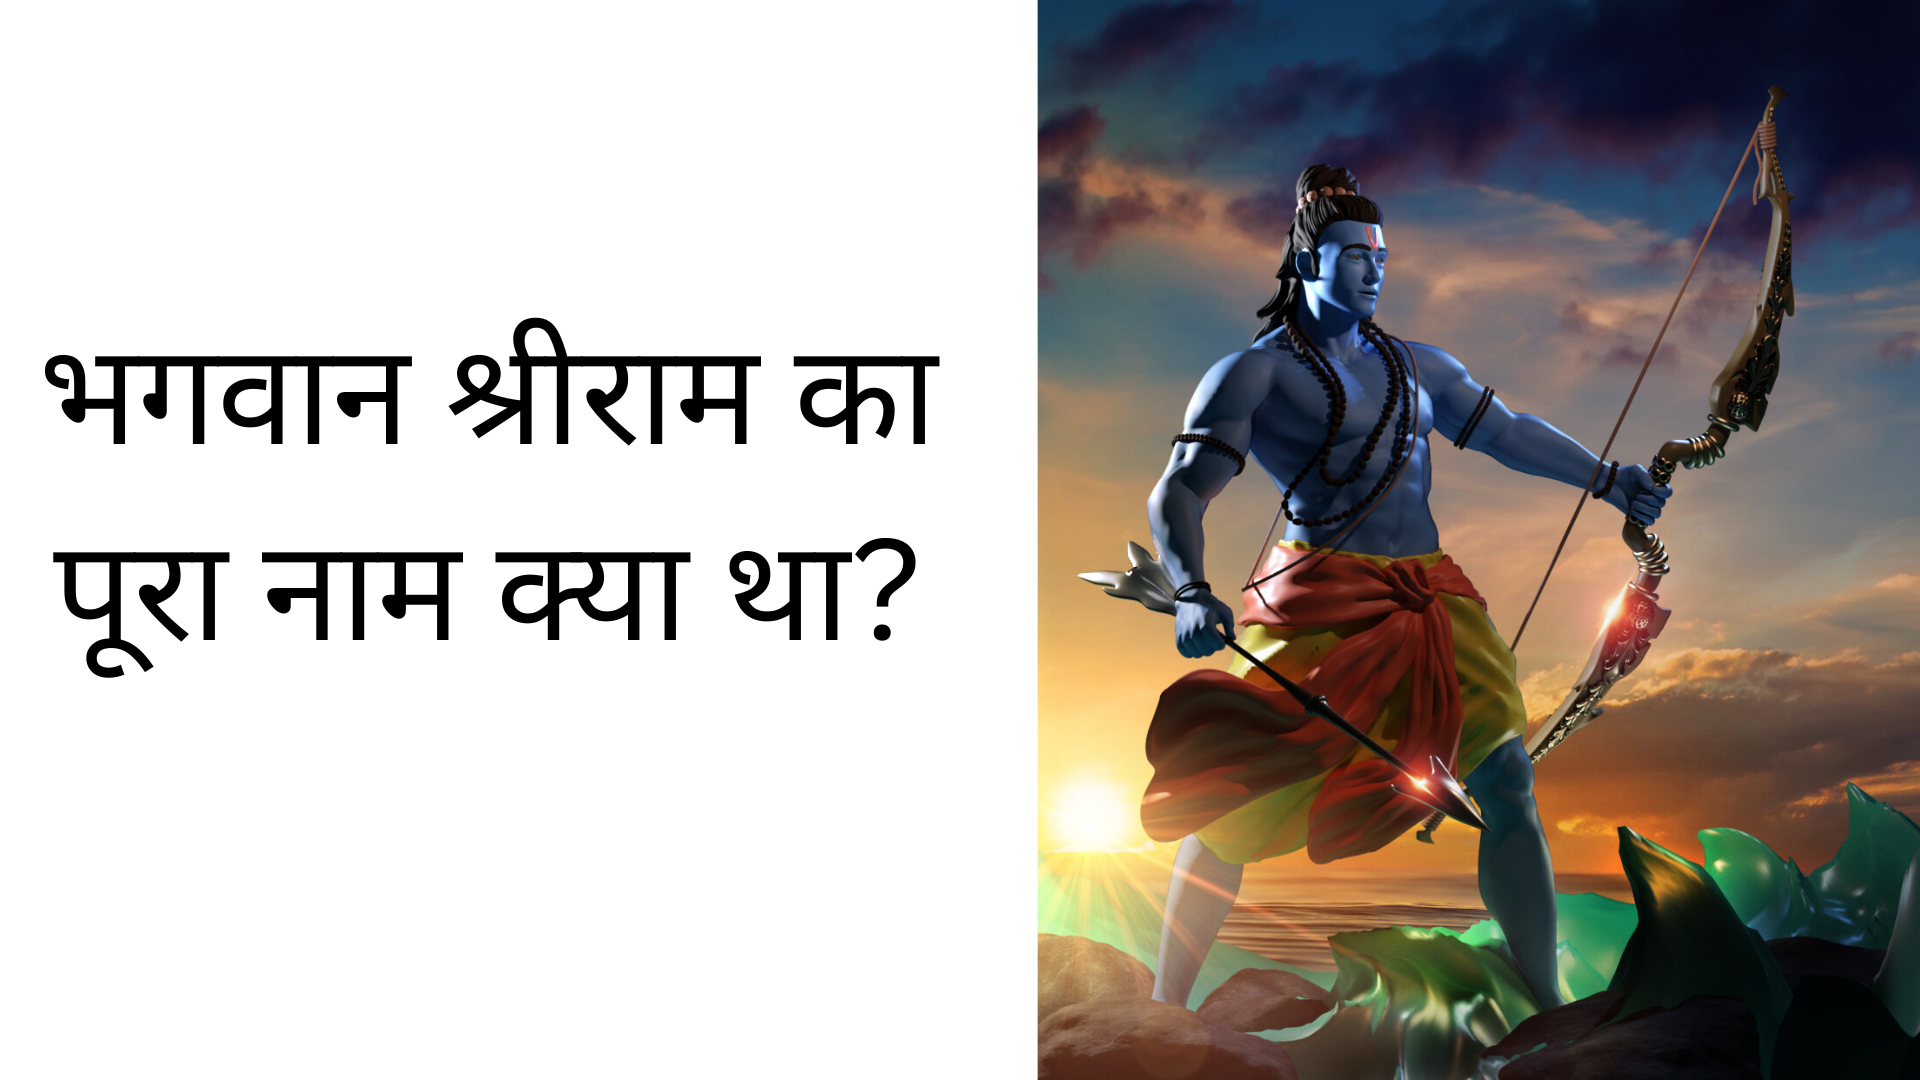 भगवान श्रीराम का पूरा नाम क्या था?